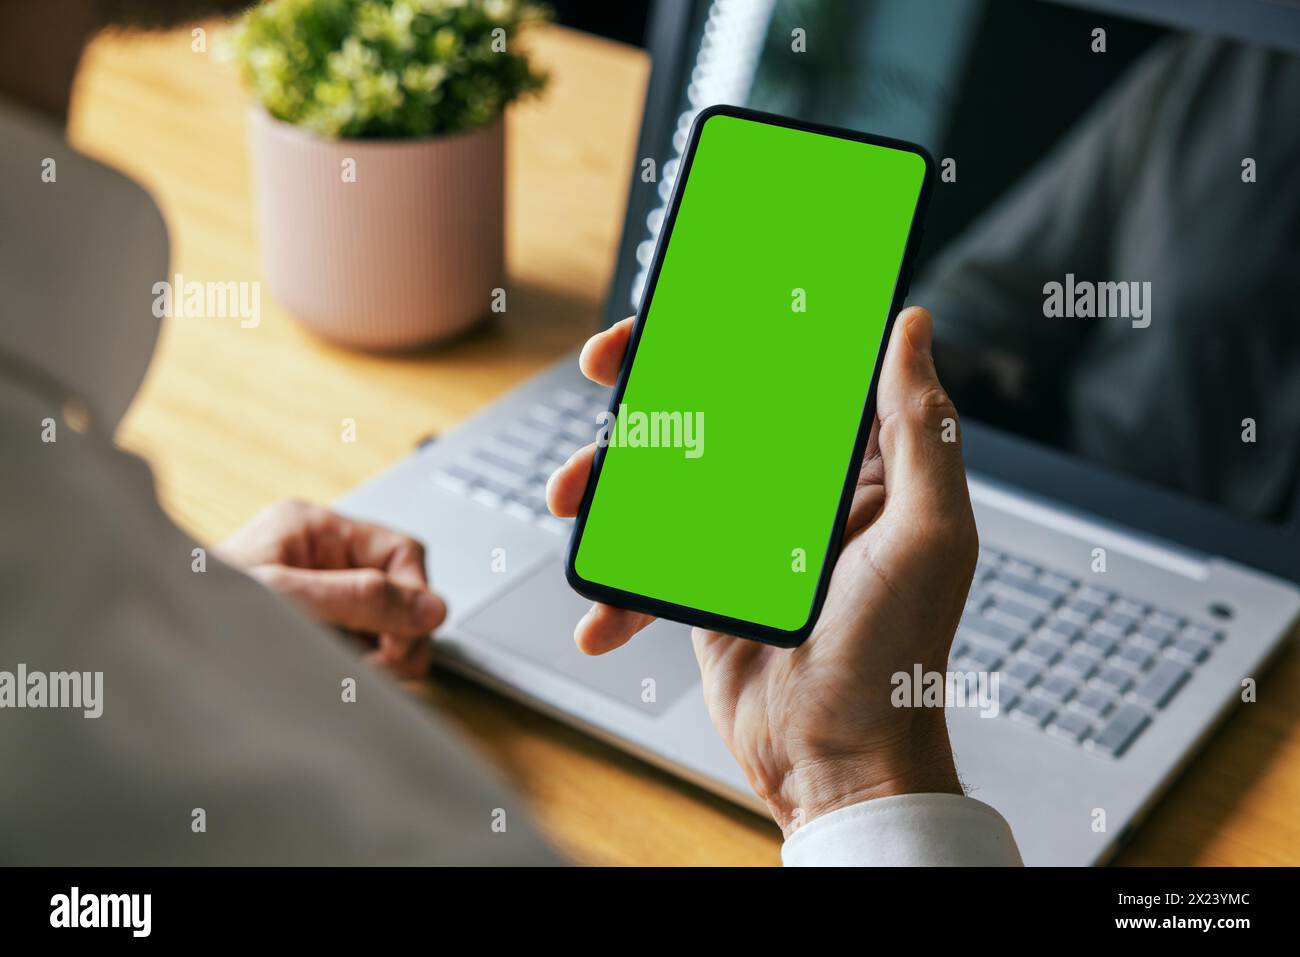 uomo che tiene in mano il telefono cellulare con schermo verde vuoto. modello di mockup Foto Stock